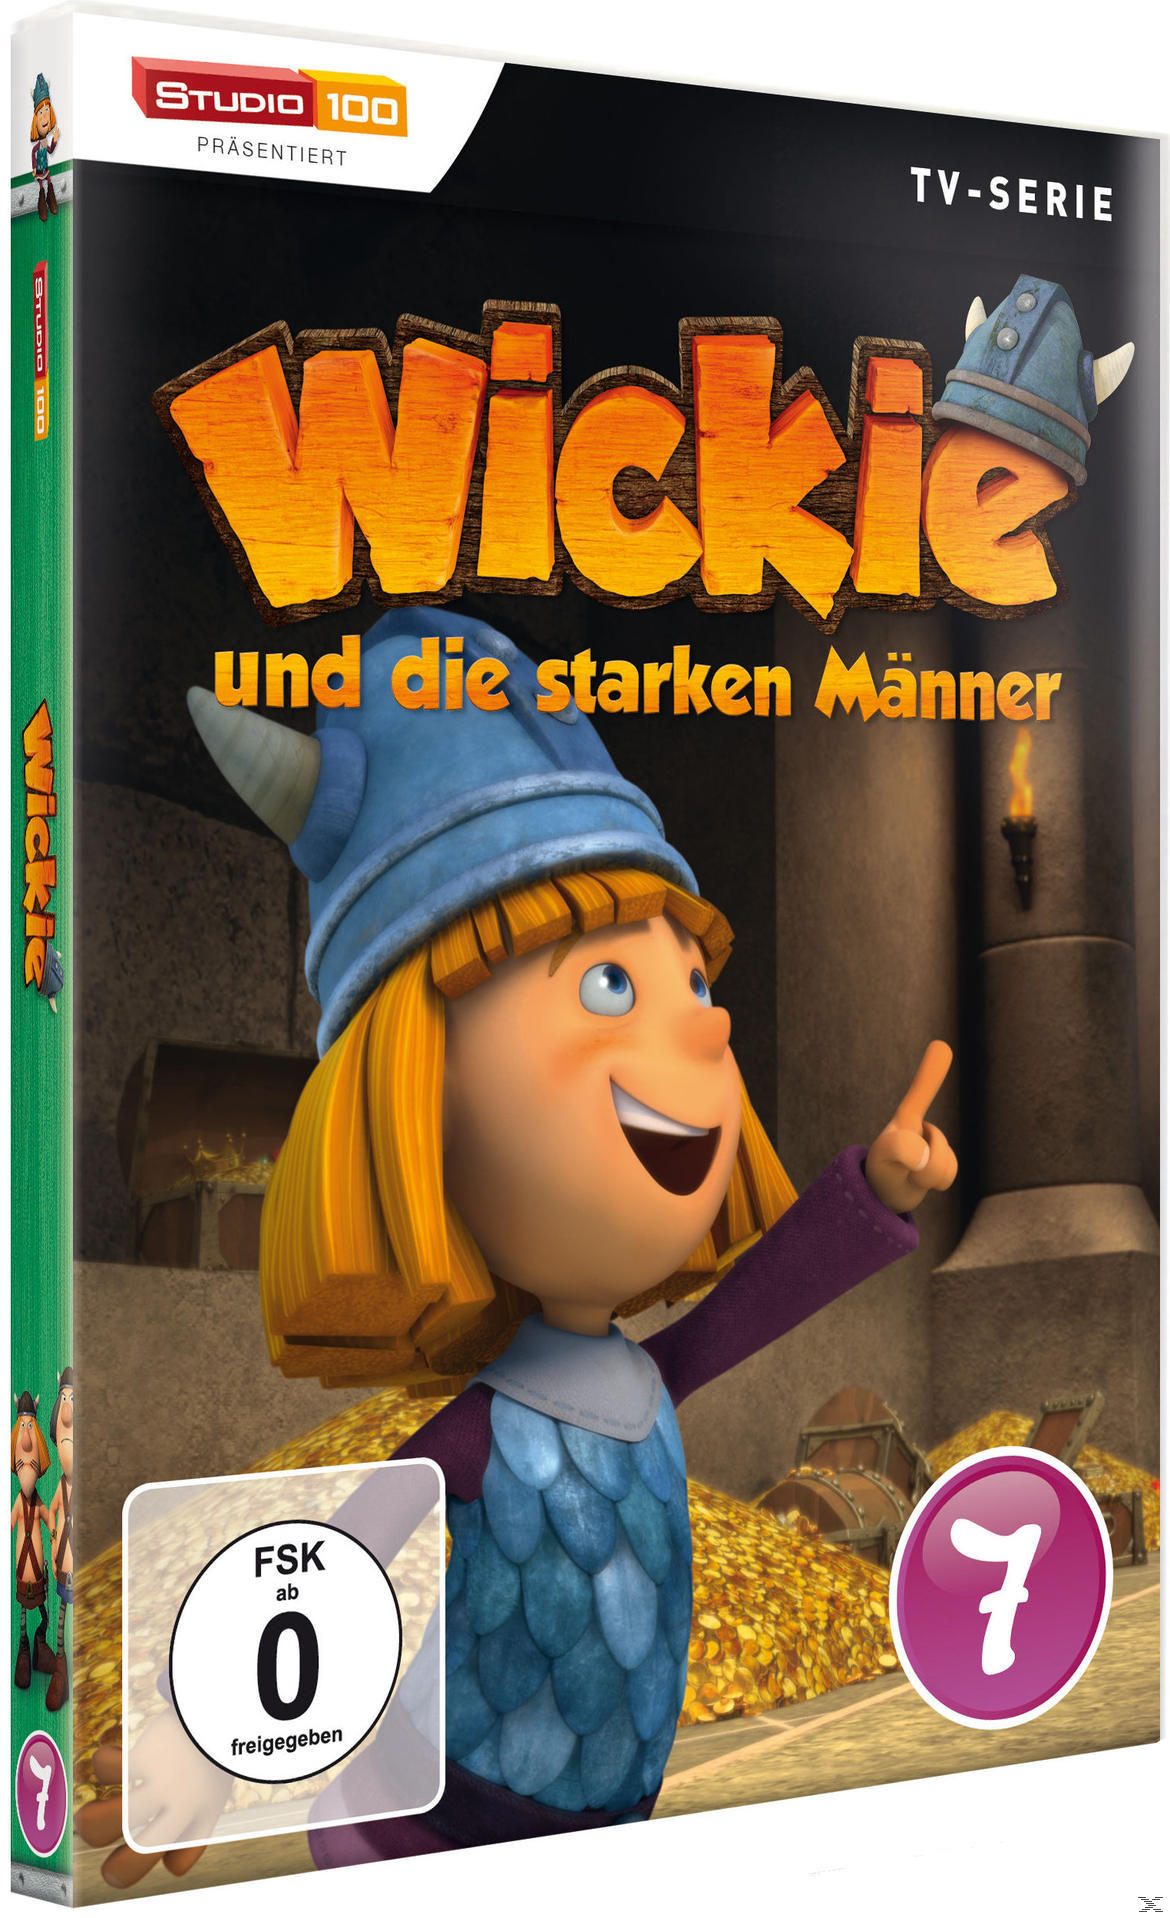 7 Wickie die Männer - starken und DVD DVD